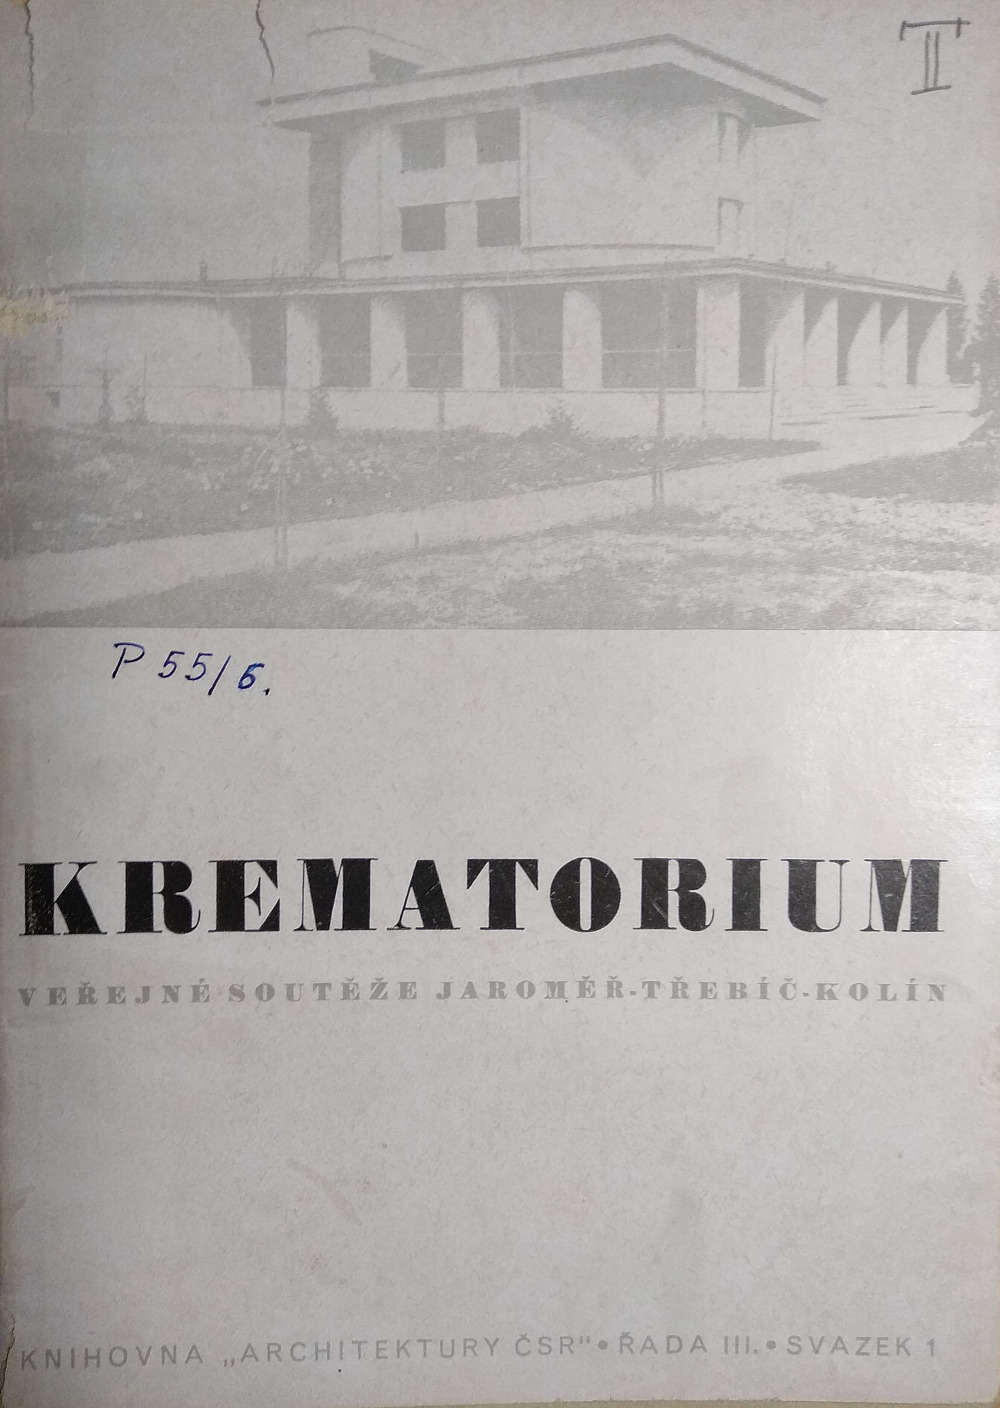 Krematorium - veřejné soutěže z r. 1943, Jaroměř-Třebíč-Kolín